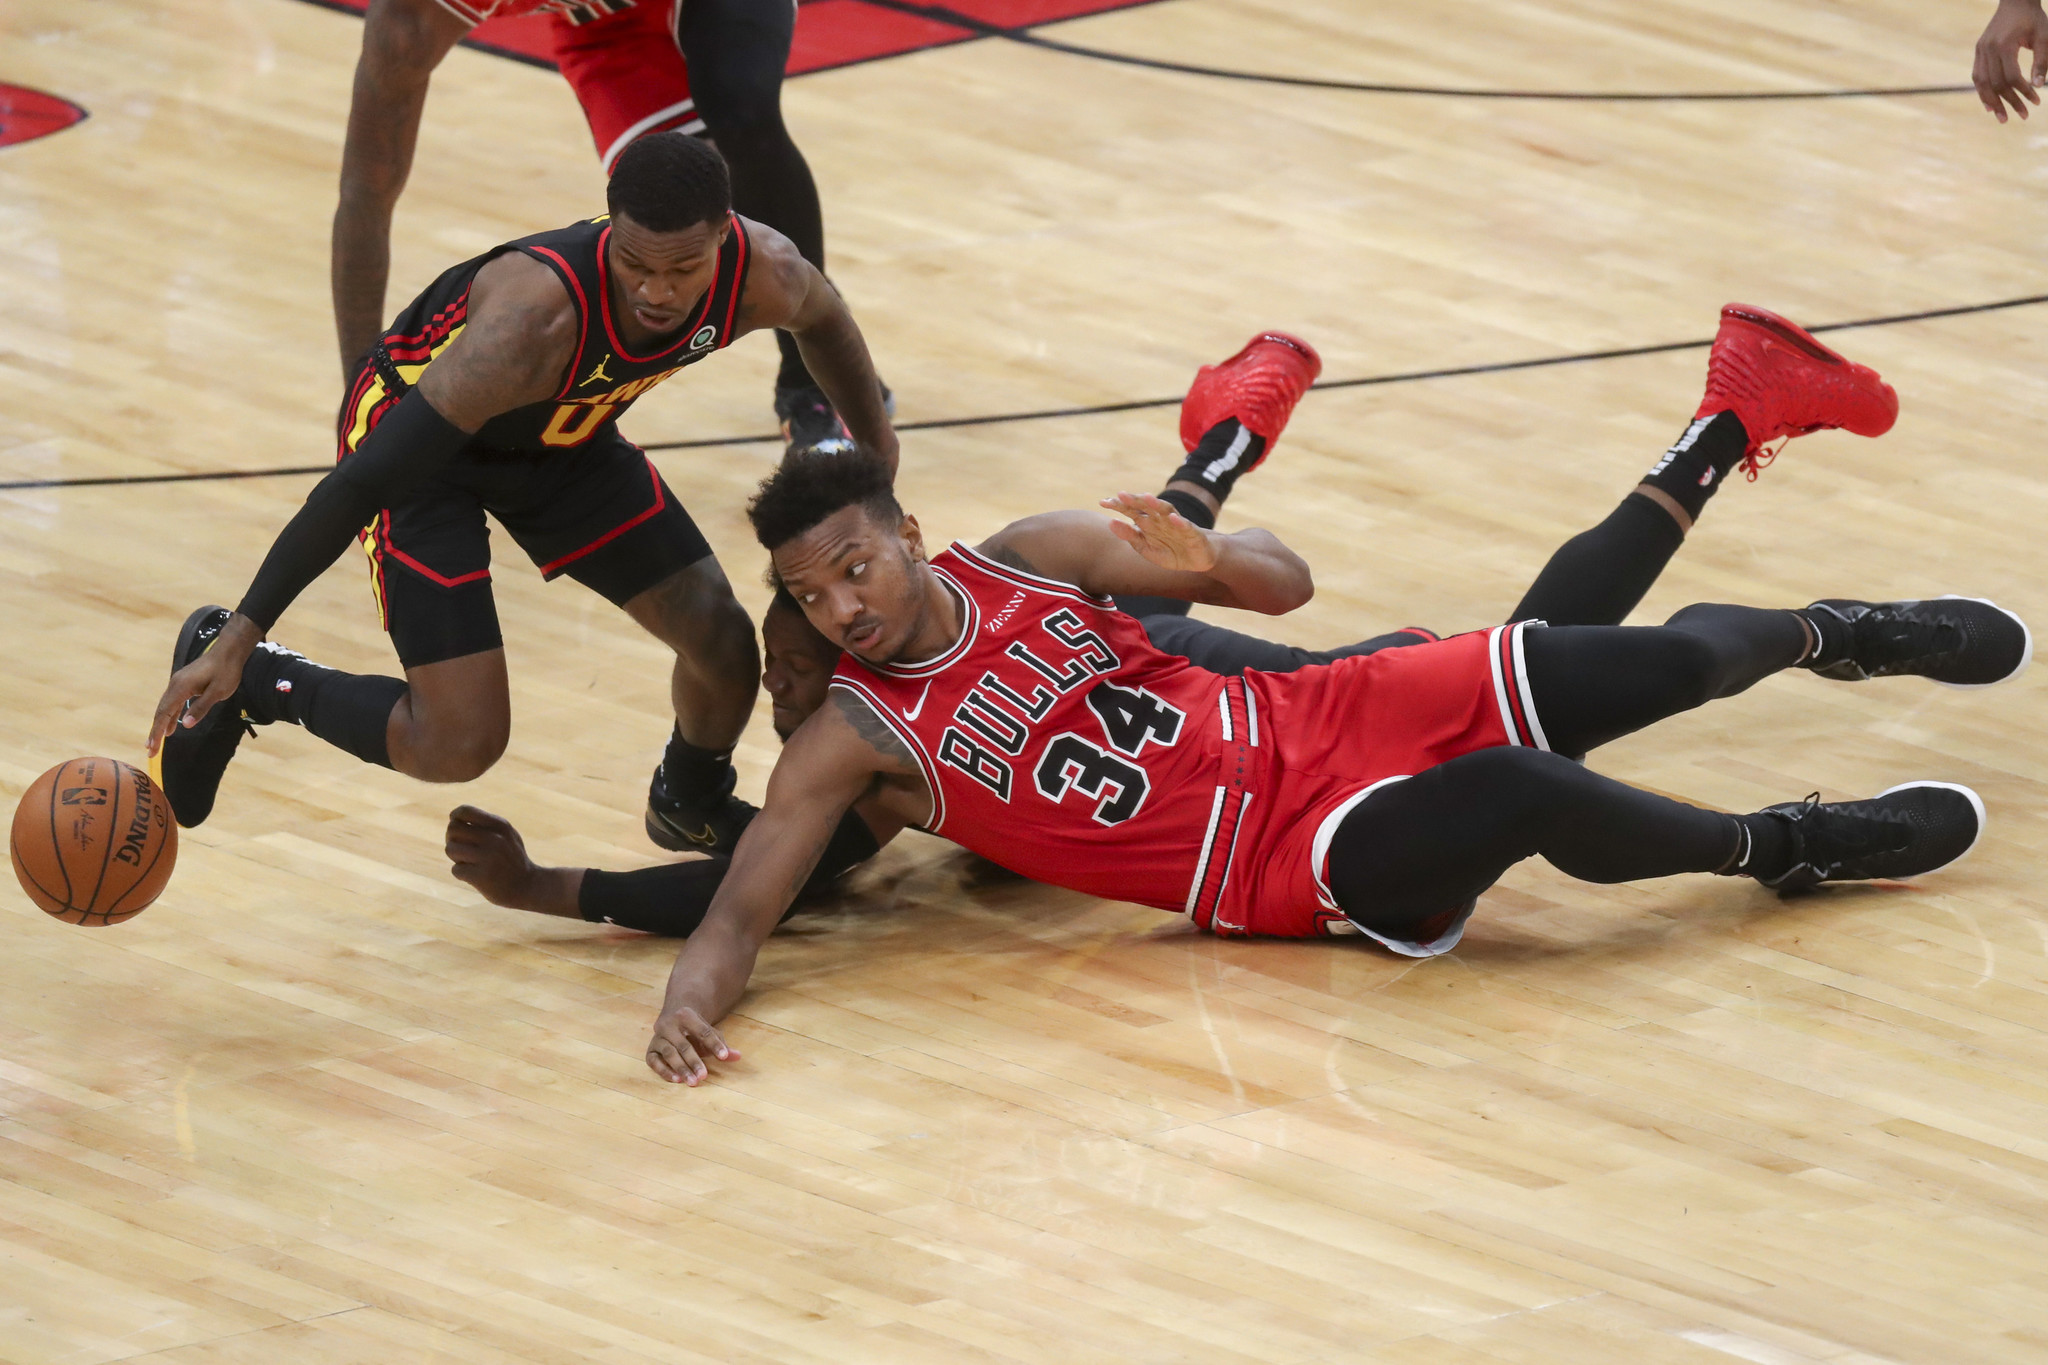 Chicago Bulls: Wendell Carter Jr. still improving offensive game